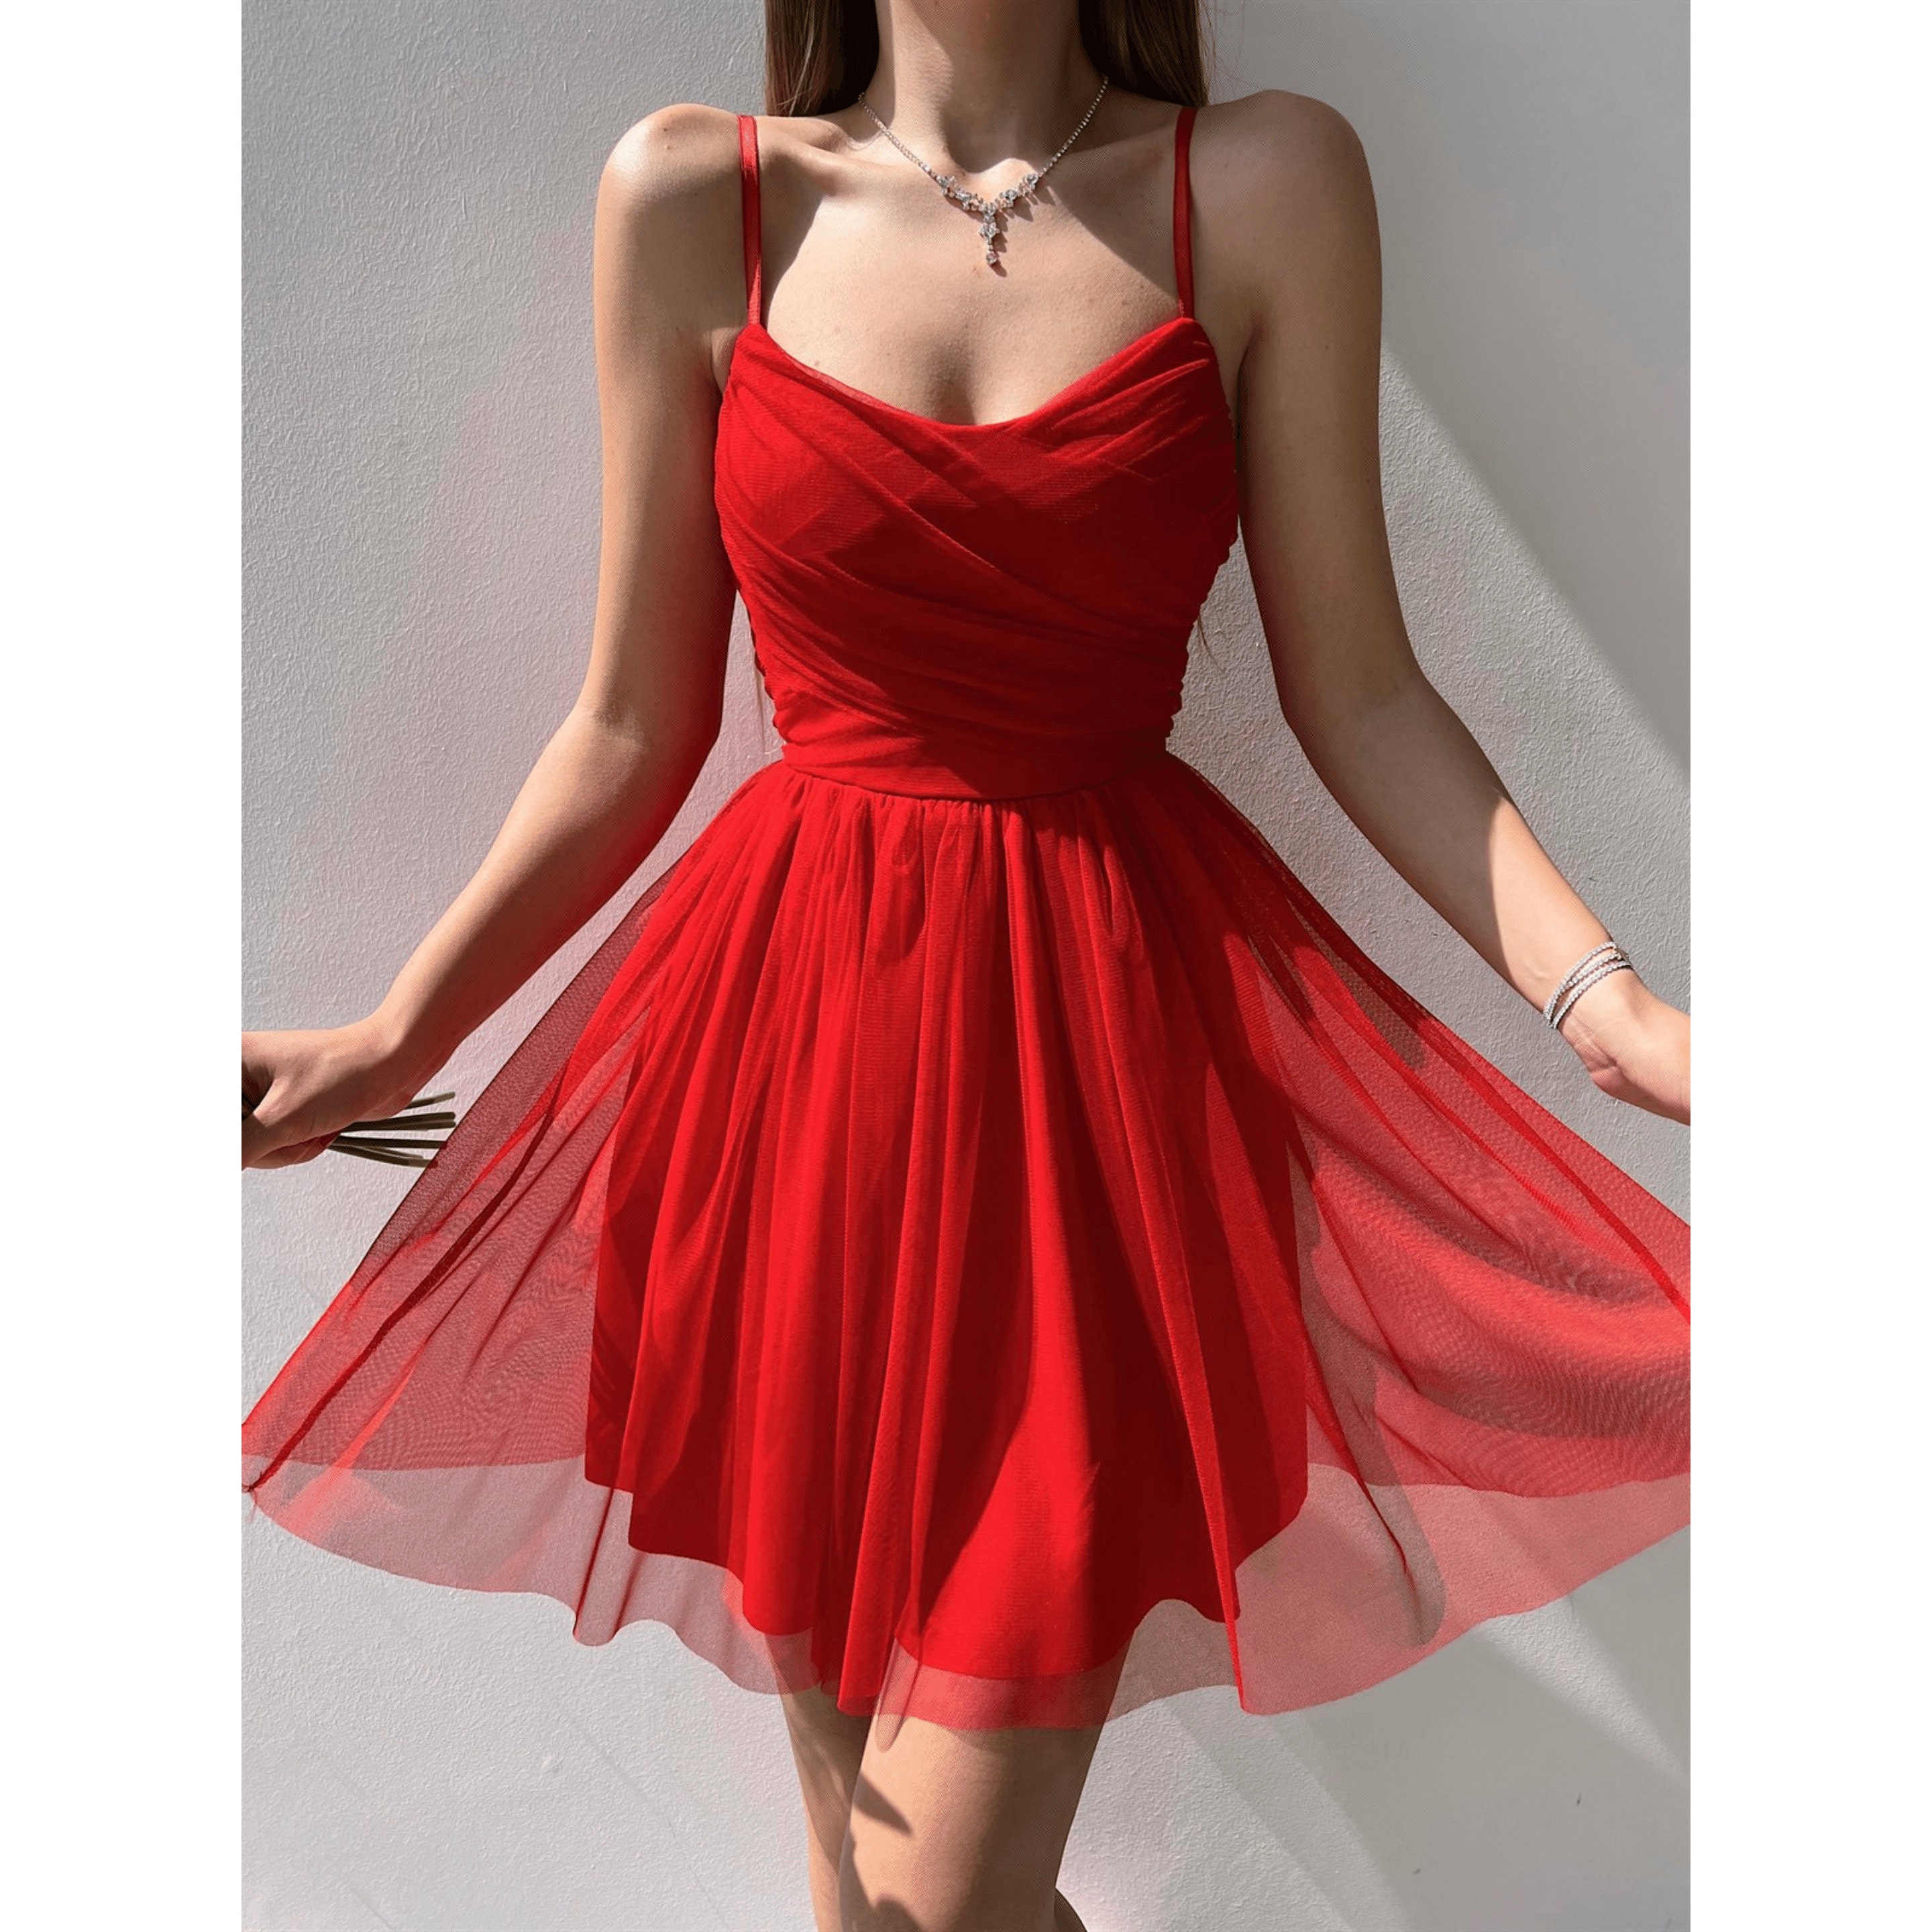 Red Tulle Dress Tulle Dress Corset Tulle Dress - Etsy